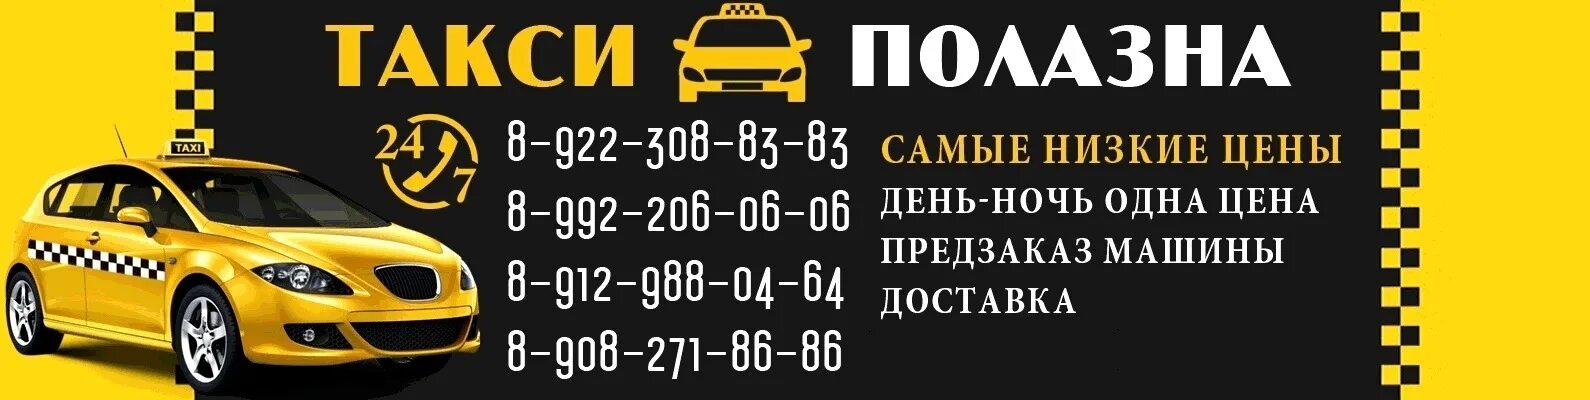 Такси Полазна. Такси в Полазне. Номера такси в Полазне. Такси Полазна Пермский край. Такси заречный телефон